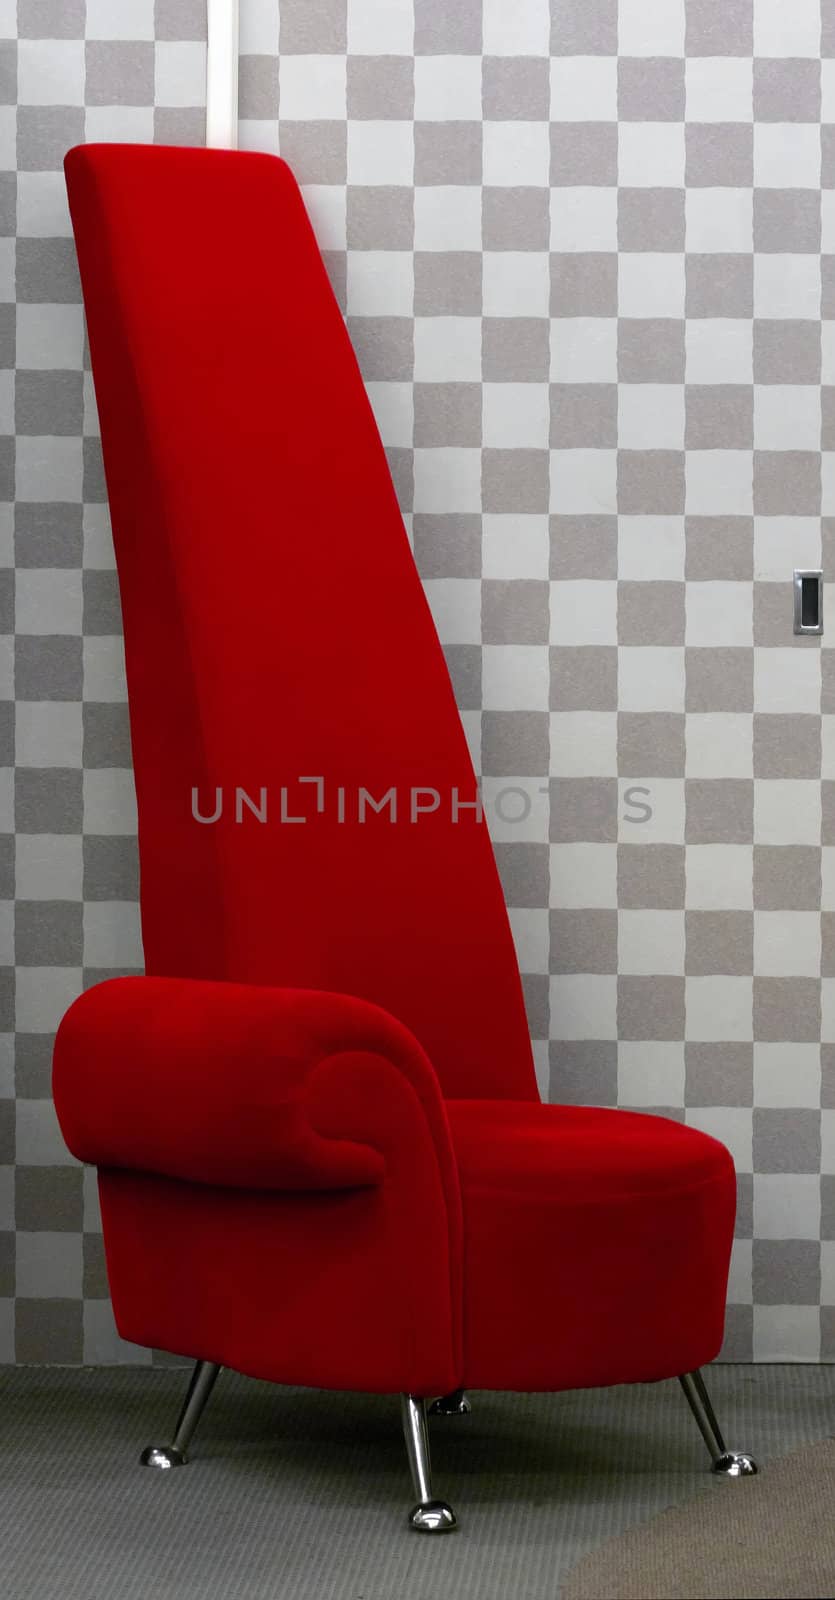 red designer chair by zkruger